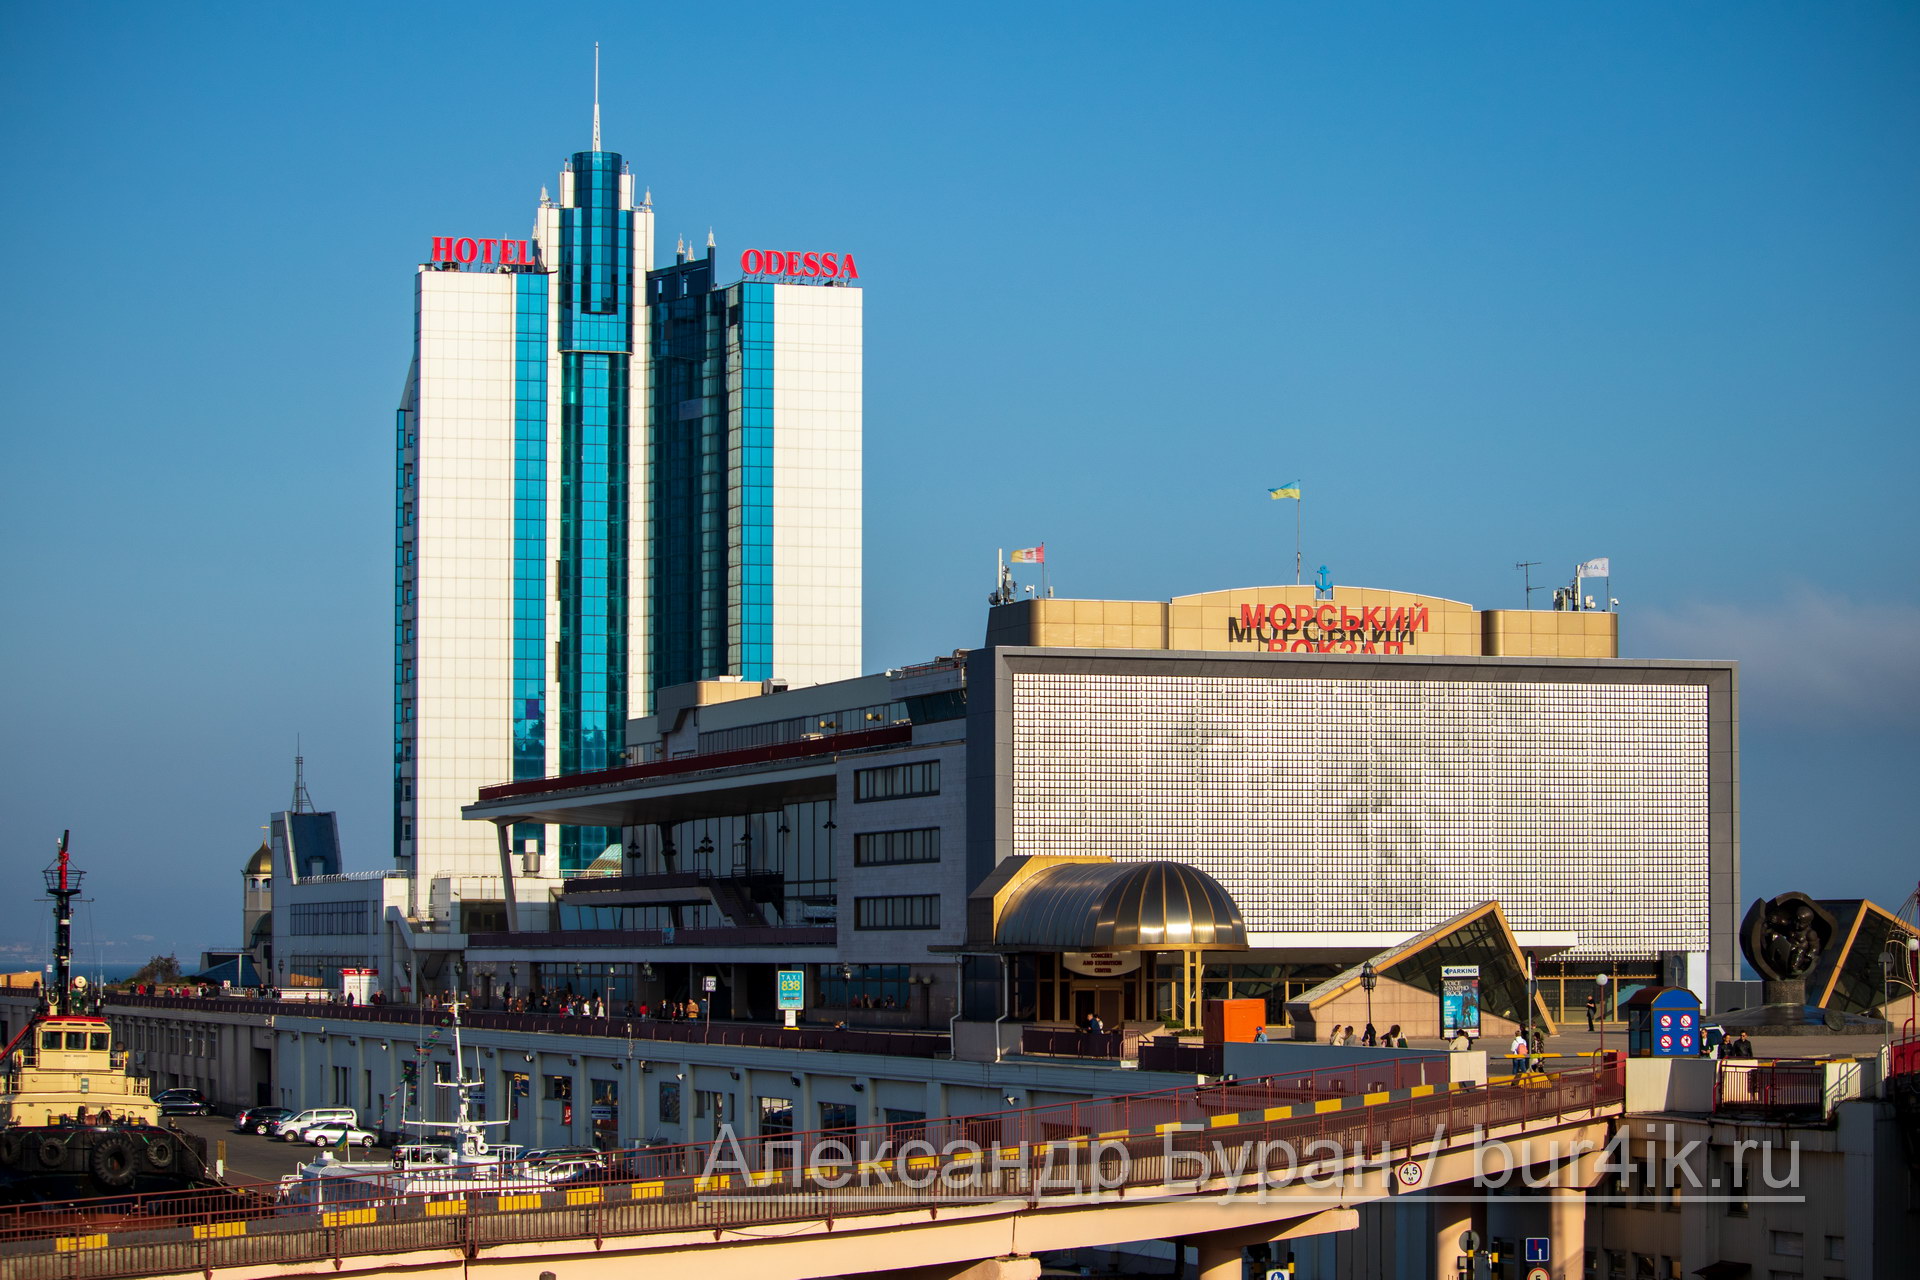 Морского вокзала в Одессе и вход в него - Украина, Одесса, 09,11,2019